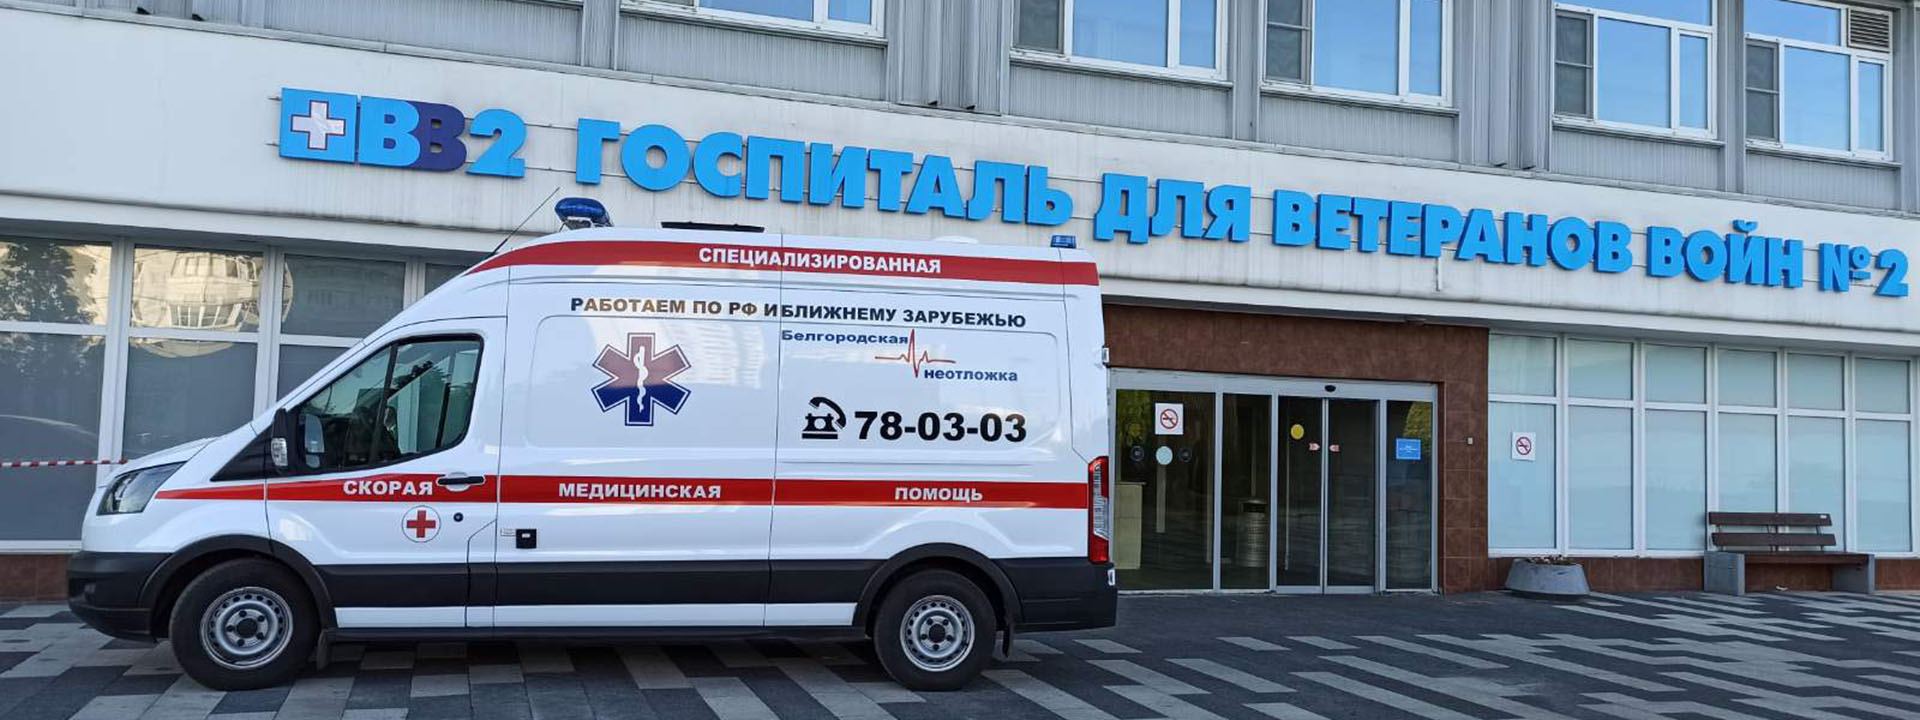 Медицинская эвакуация по России и странам ближнего зарубежья